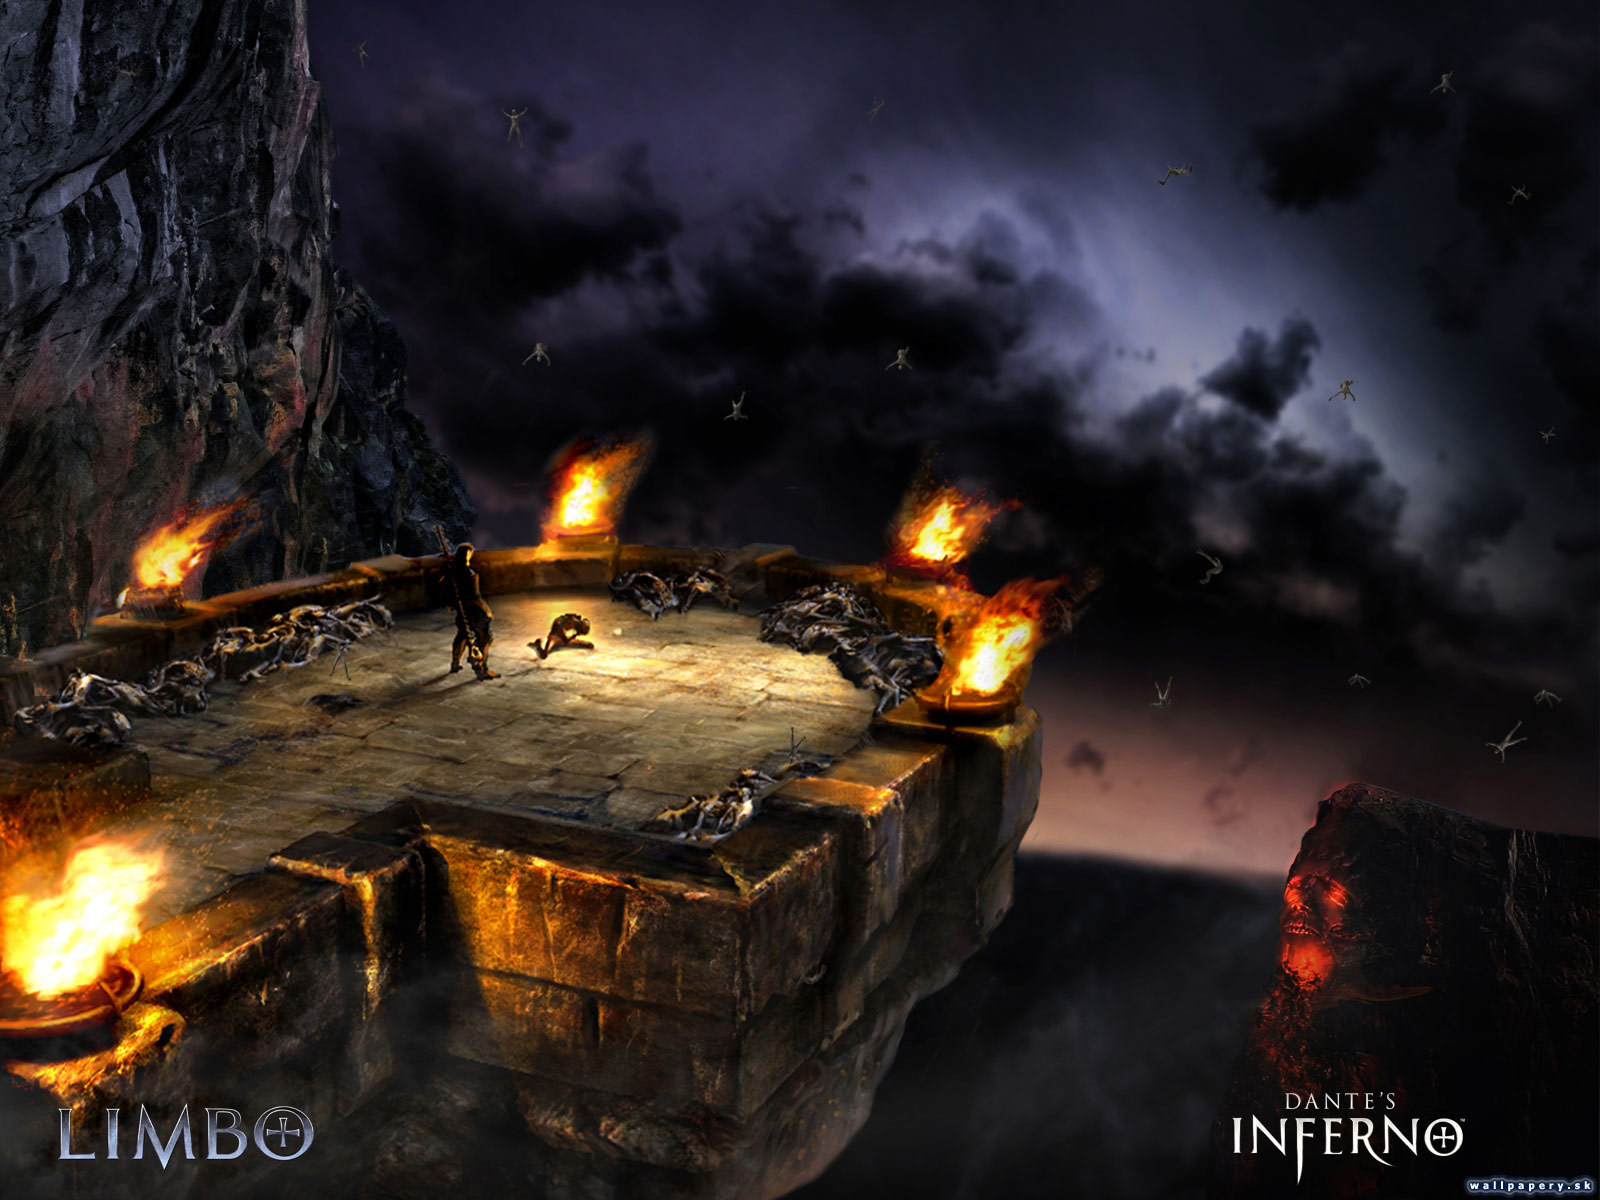 Dante's Inferno - wallpaper 5